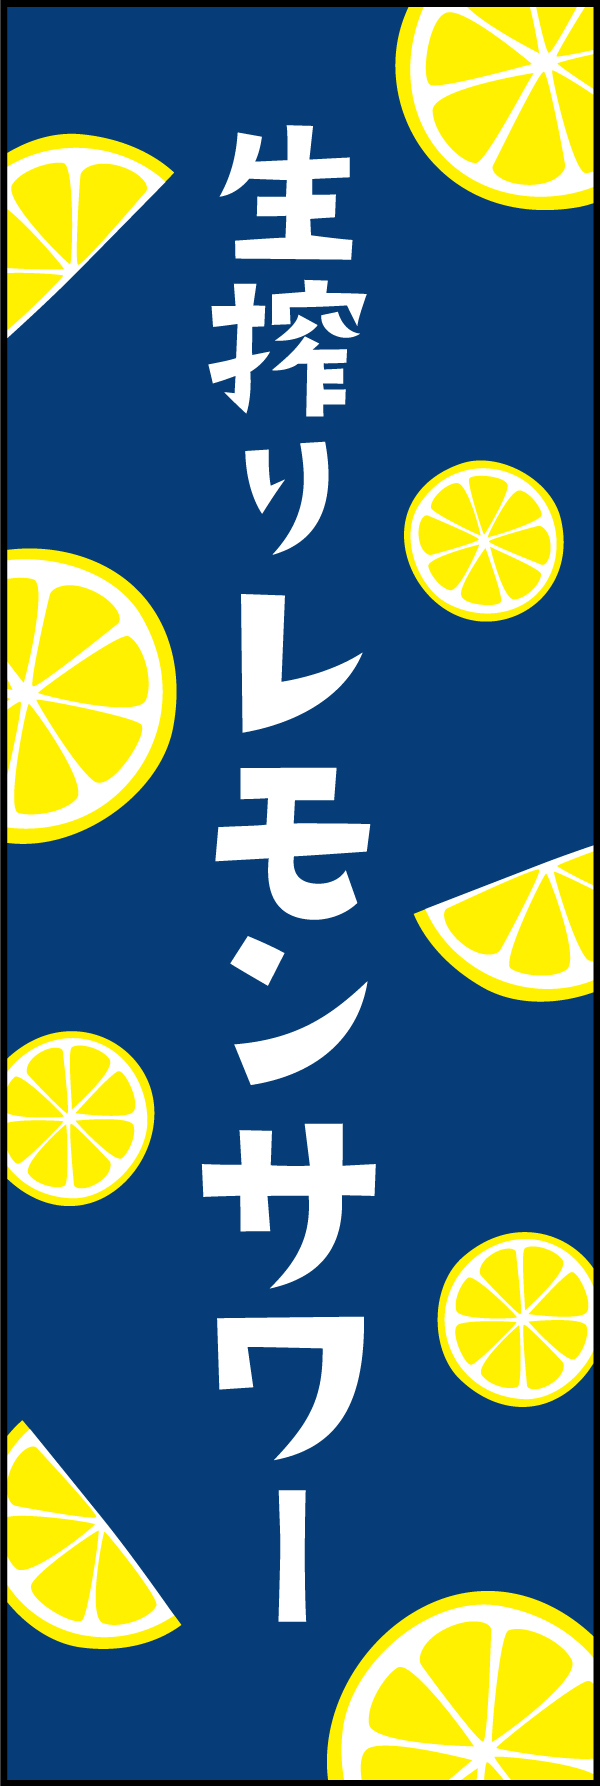 生搾りレモンサワー 204_01 「生搾りレモンサワー」ののぼりです。レモンのイラストが目立つデザインです。（Y.M）